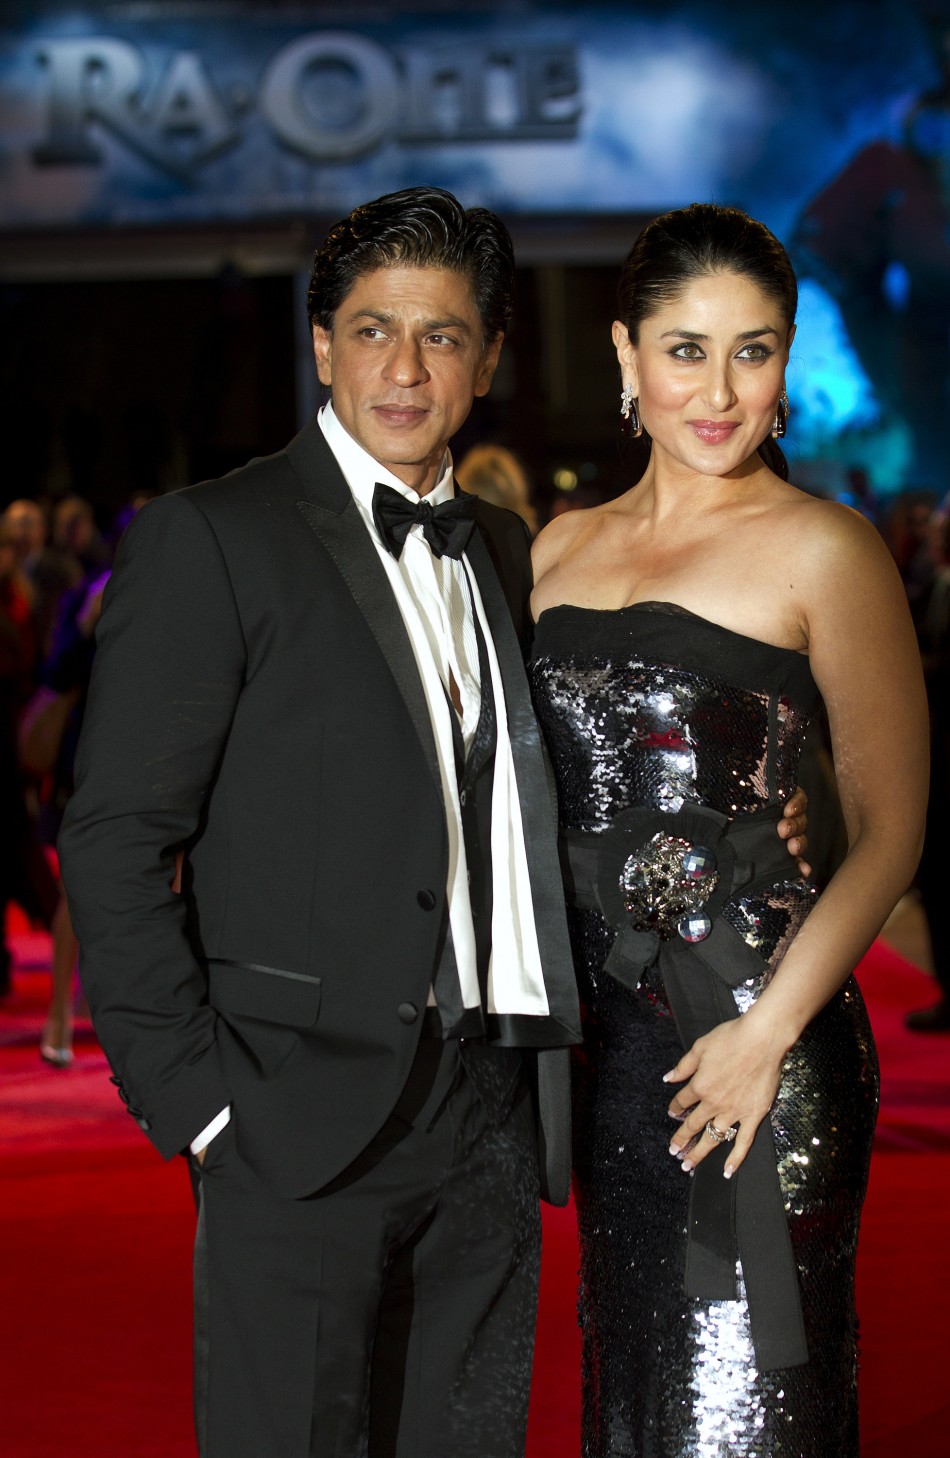 Shah Rukh Khan and Kareena Kapoor